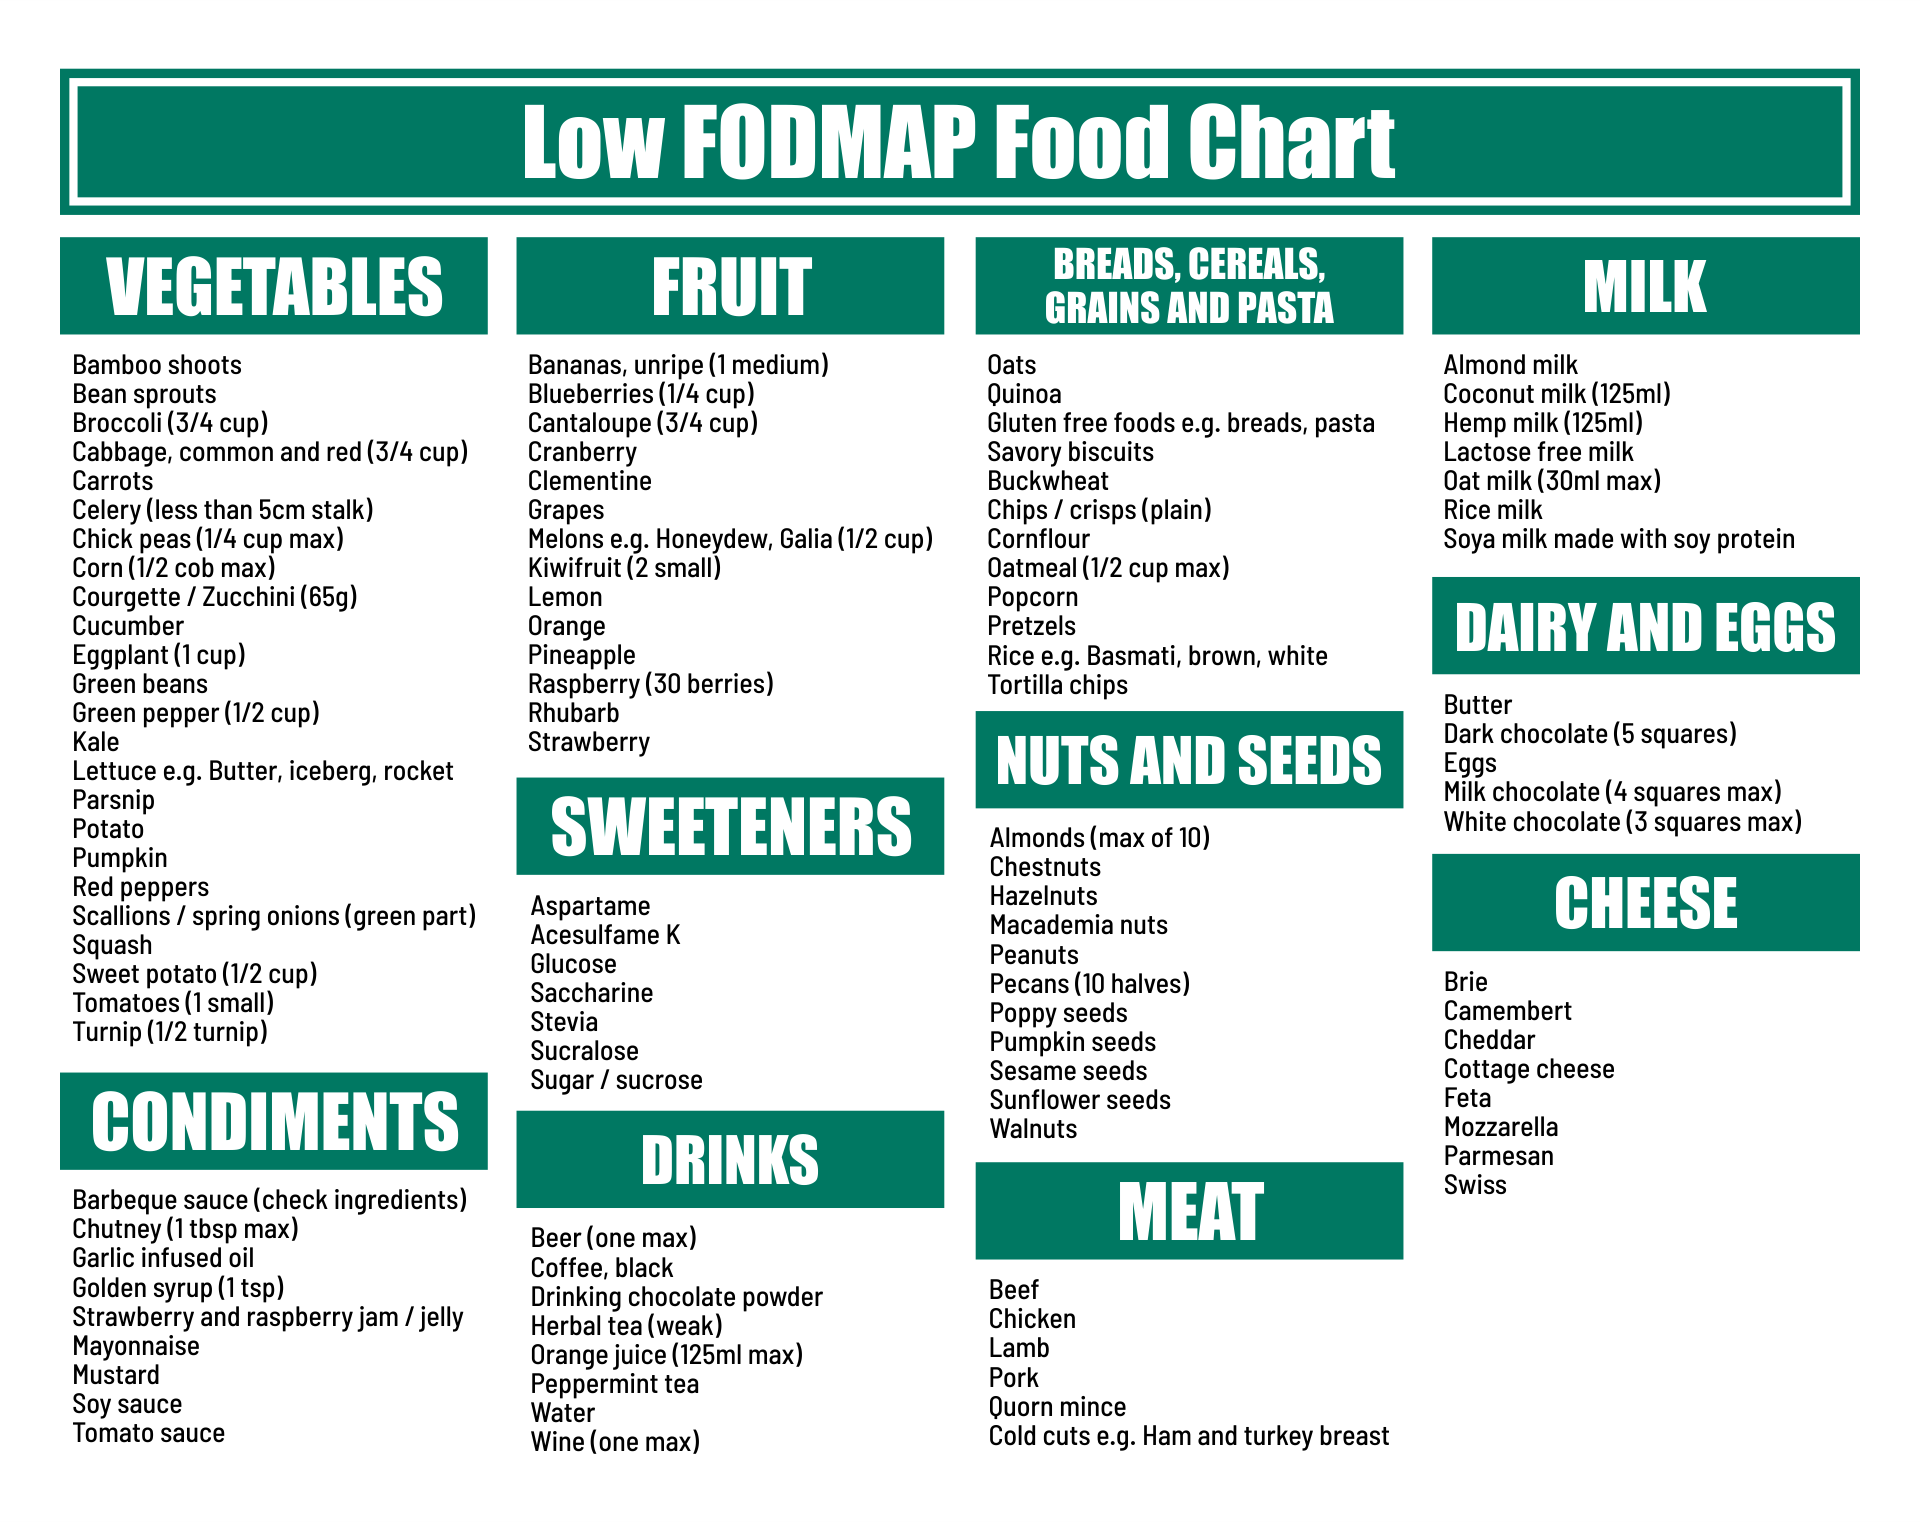 Low Fodmap Diet Printable